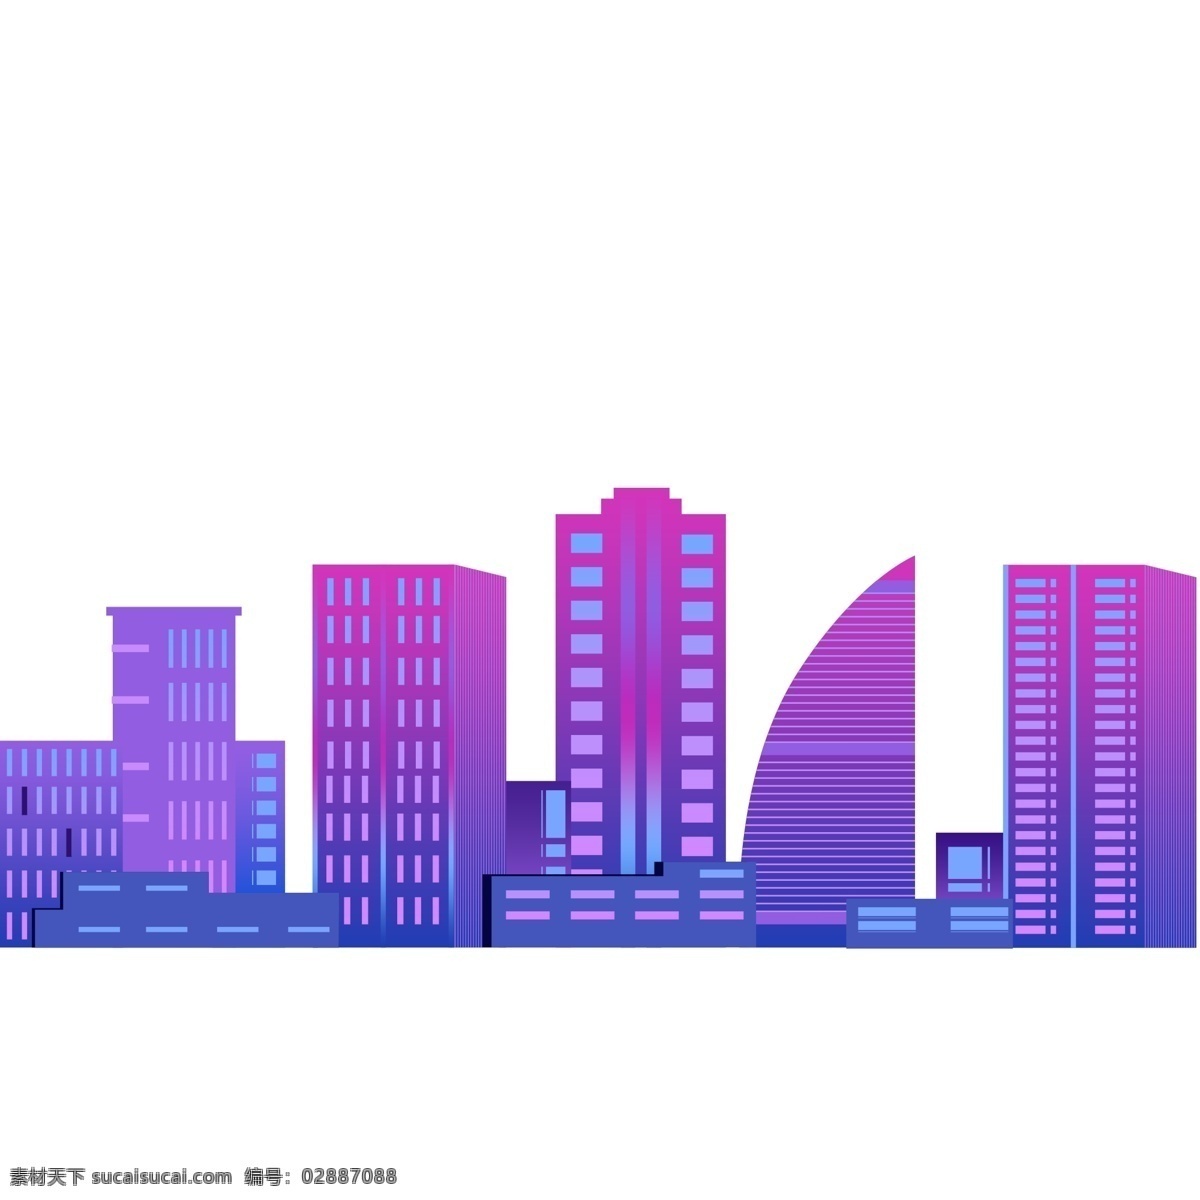 扁平化 城市 楼房 剪影 商用 元素 紫色 时尚 城市剪影 建筑剪影 简约设计 楼房剪影 psd设计